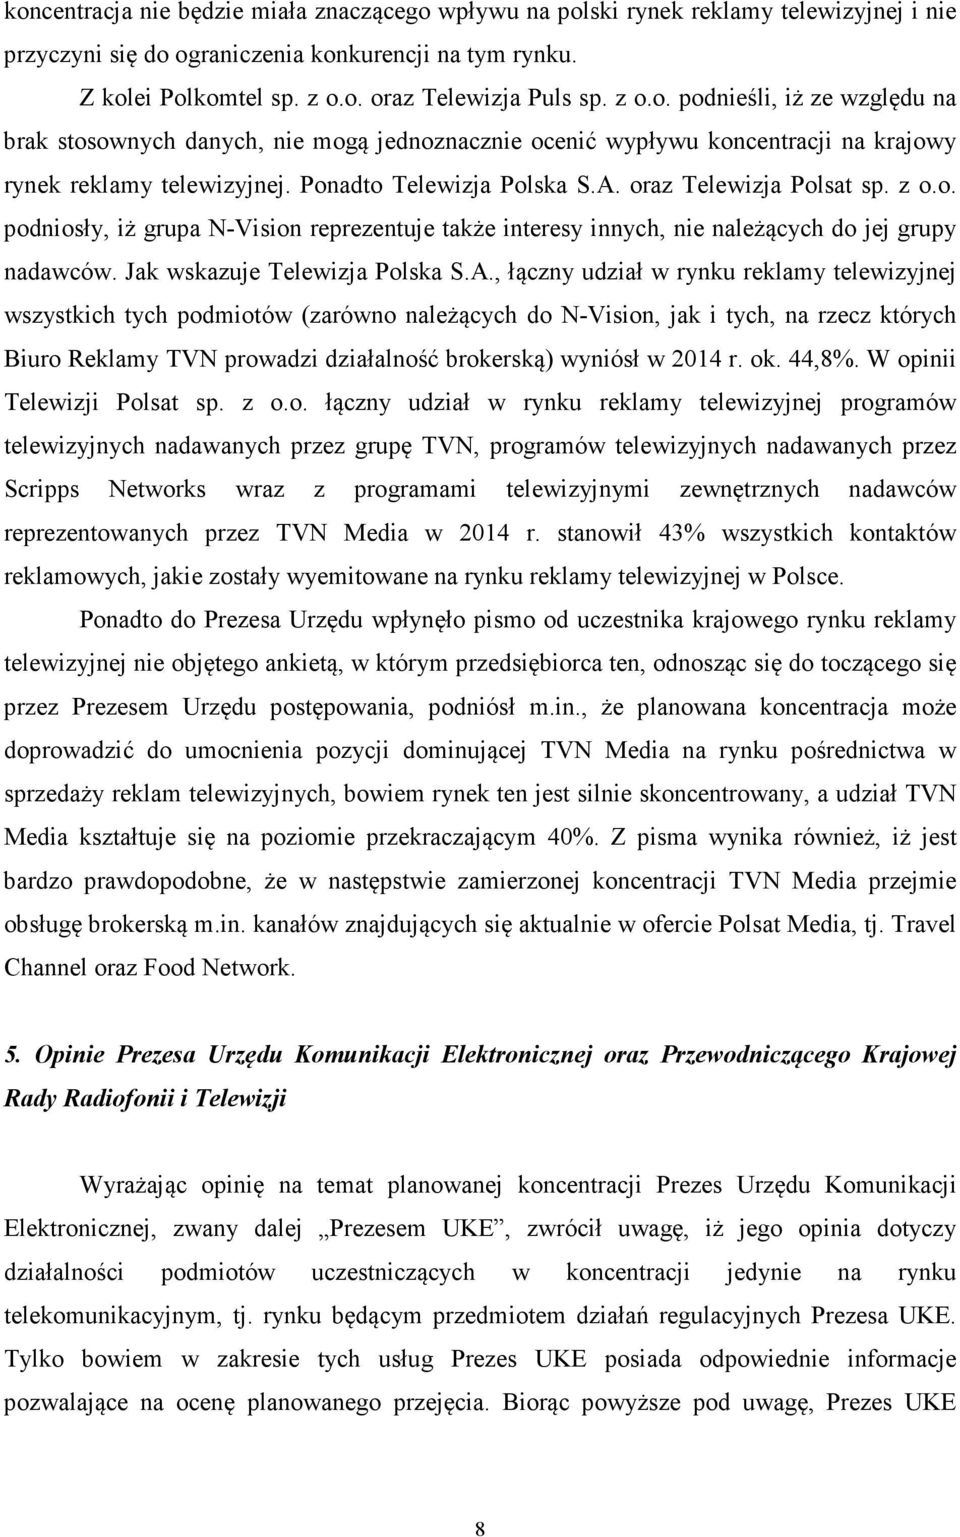 oraz Telewizja Polsat sp. z o.o. podniosły, iż grupa N-Vision reprezentuje także interesy innych, nie należących do jej grupy nadawców. Jak wskazuje Telewizja Polska S.A.